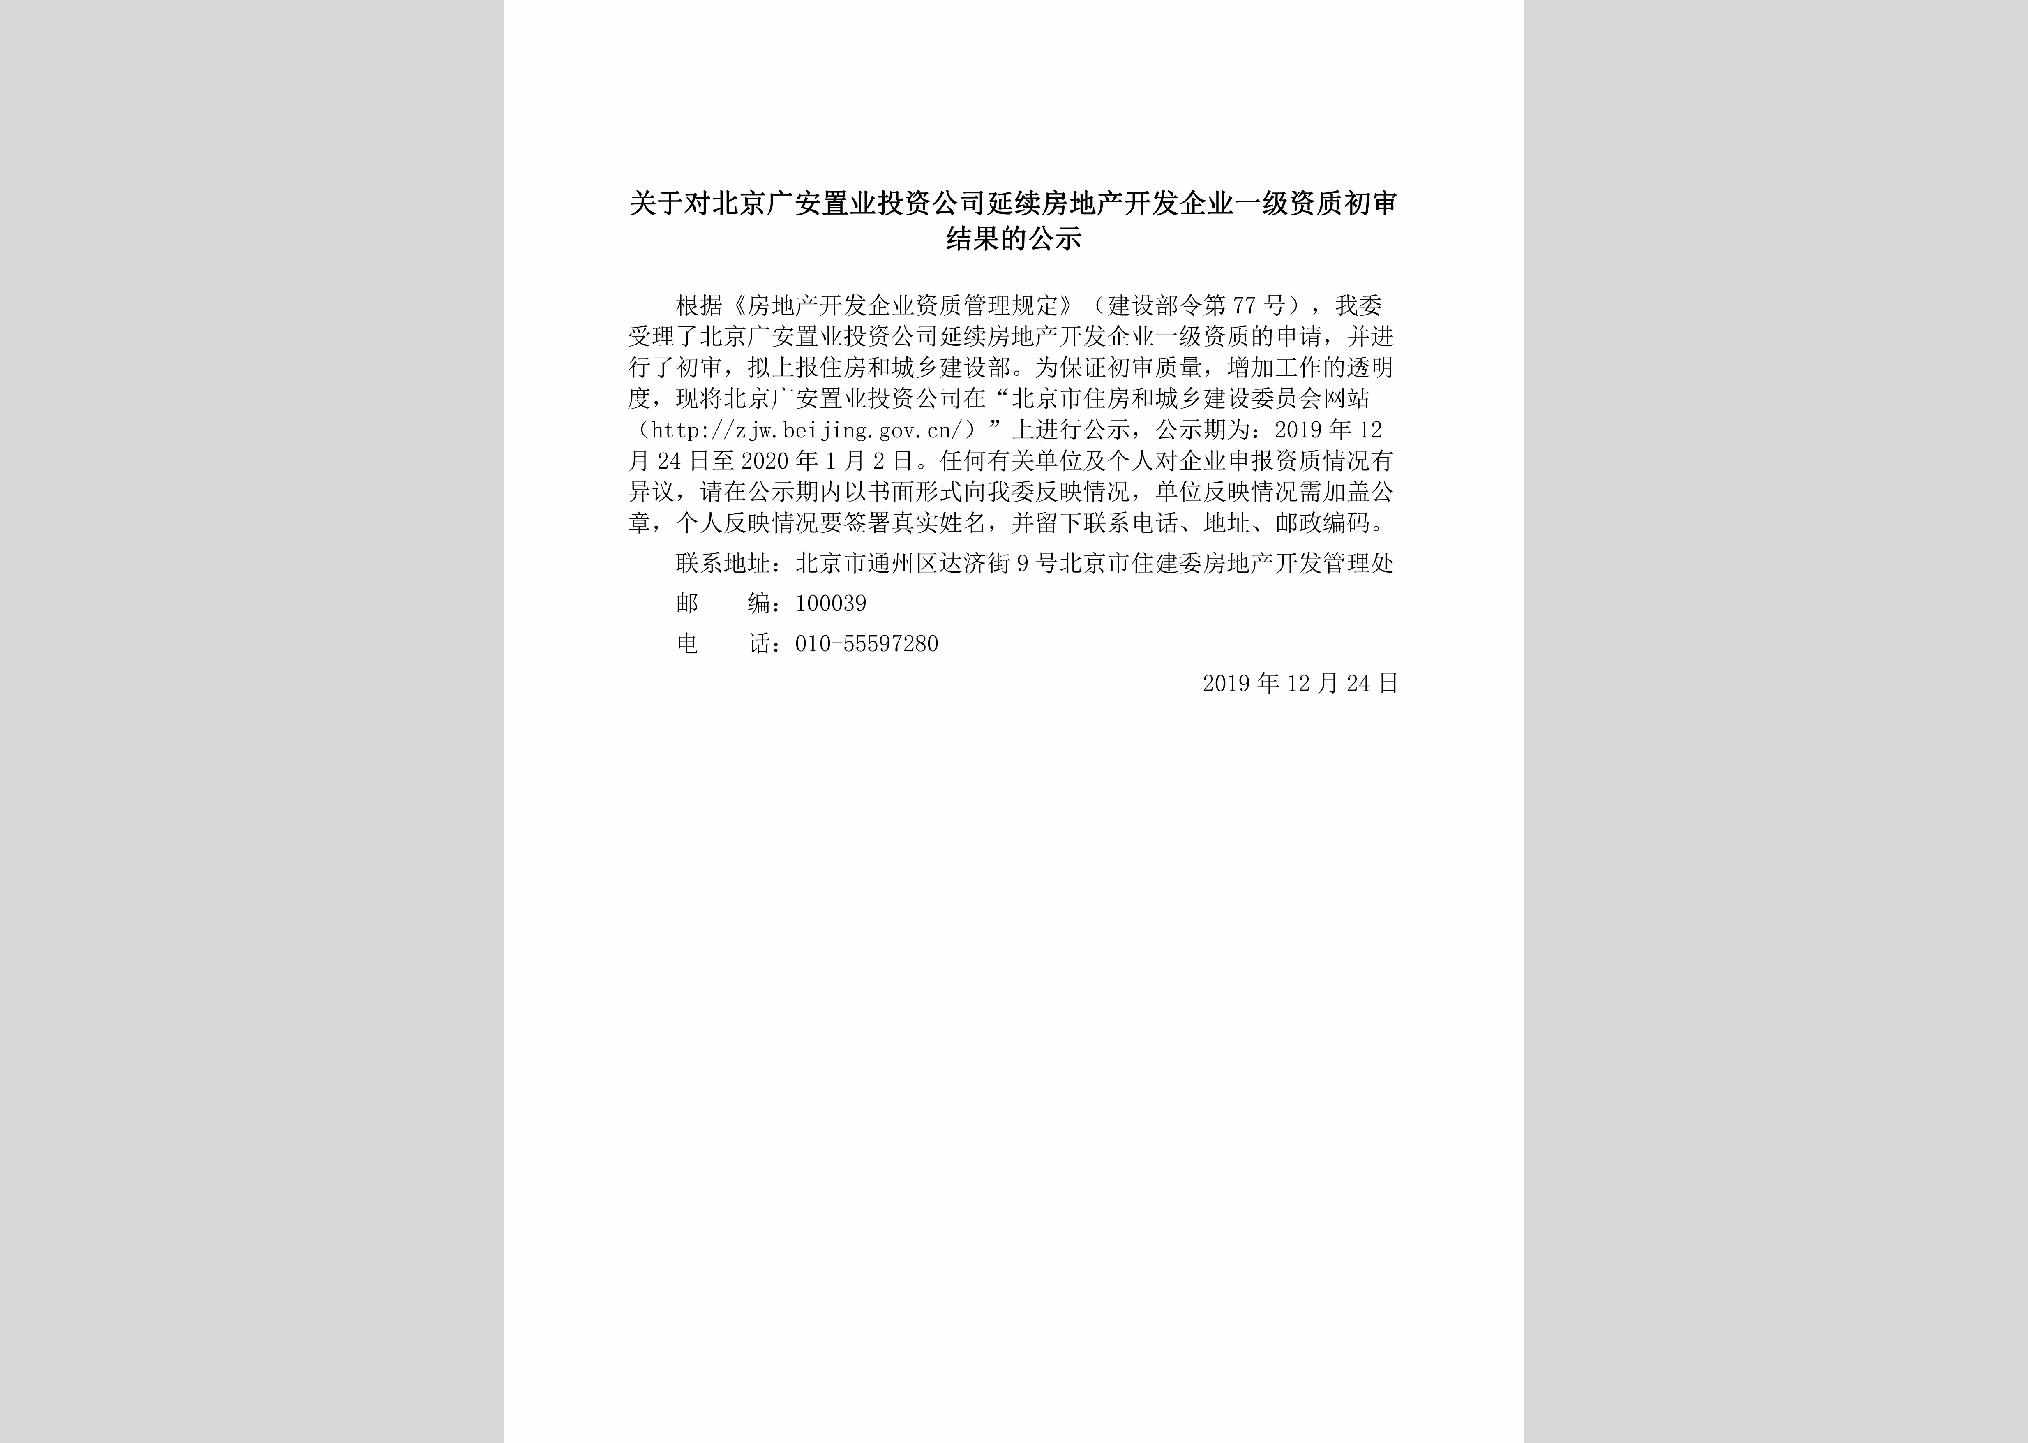 BJ-BJGAZYTZ-2019：关于对北京广安置业投资公司延续房地产开发企业一级资质初审结果的公示